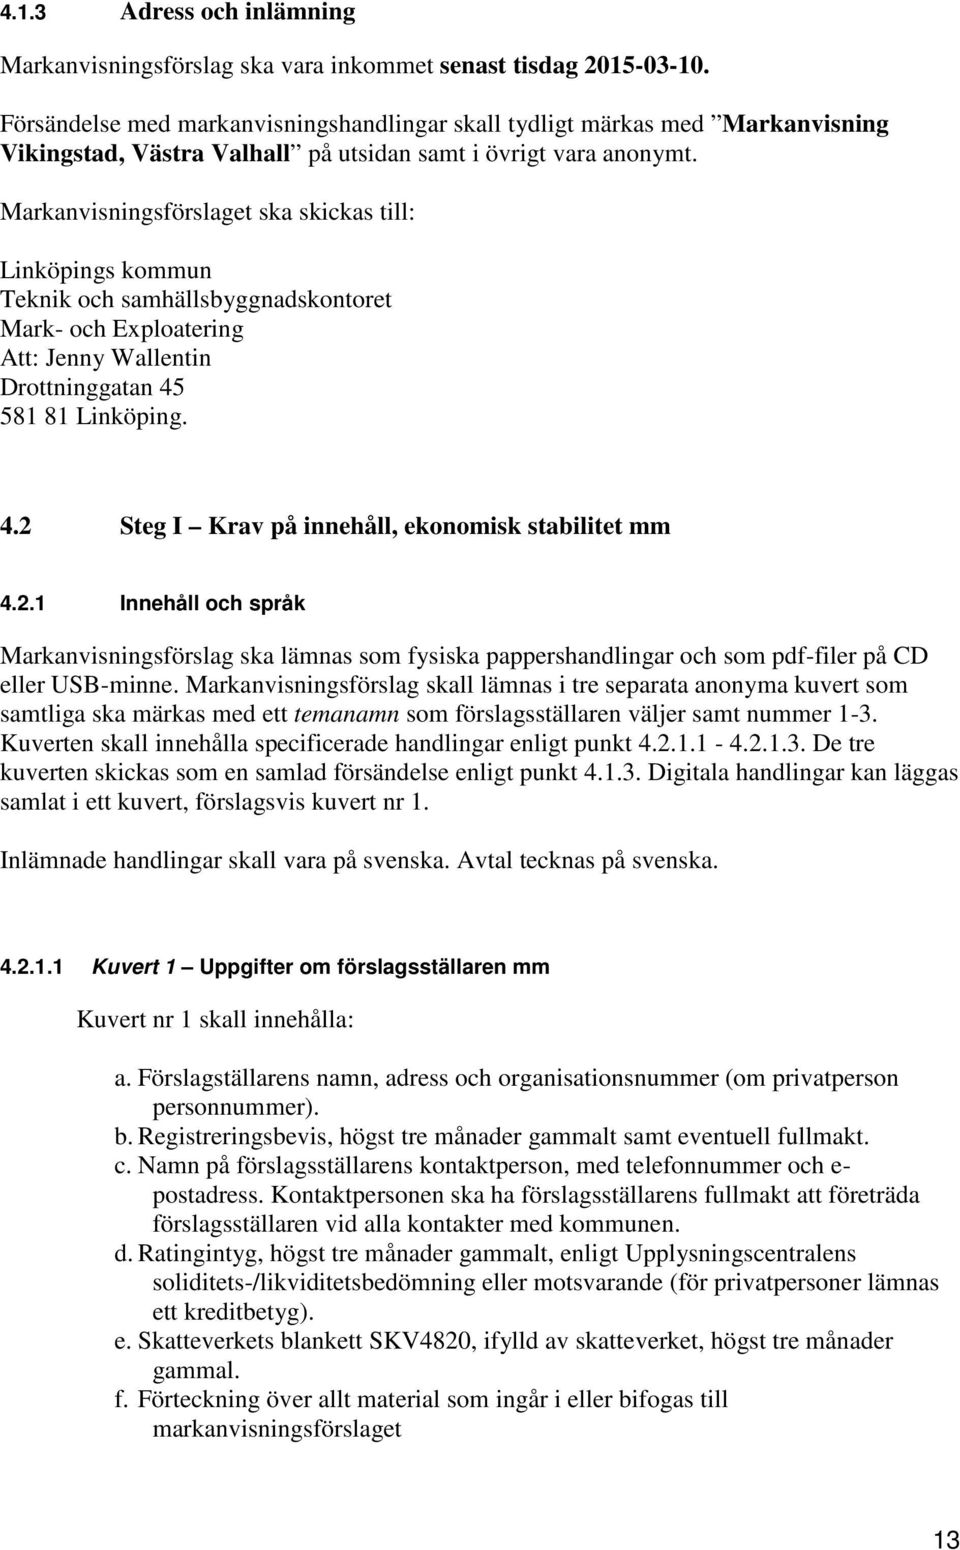 Markanvisningsförslaget ska skickas till: Linköpings kommun Teknik och samhällsbyggnadskontoret Mark- och Exploatering Att: Jenny Wallentin Drottninggatan 45